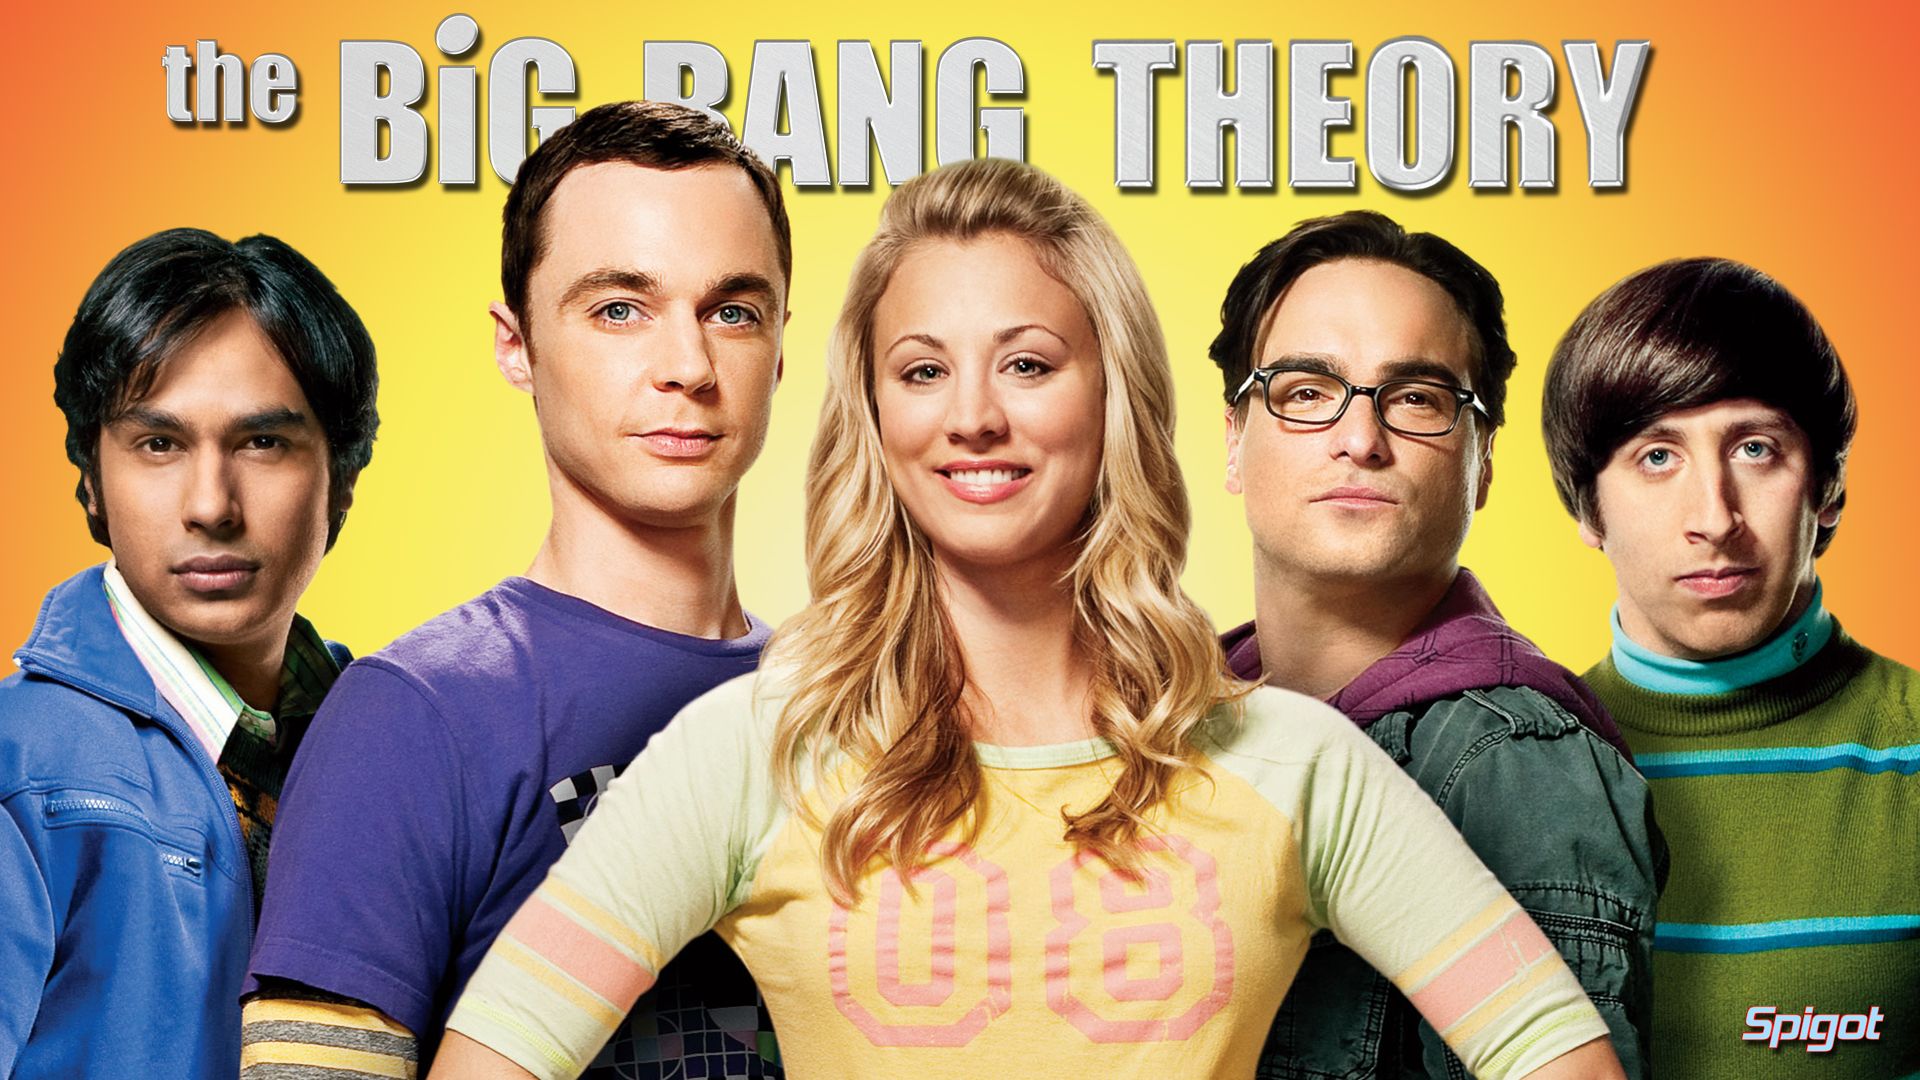 The Big Bang Theory Wallpaper. Big Floral Wallpaper, Big Badass Wallpaper and Big Wallpaper